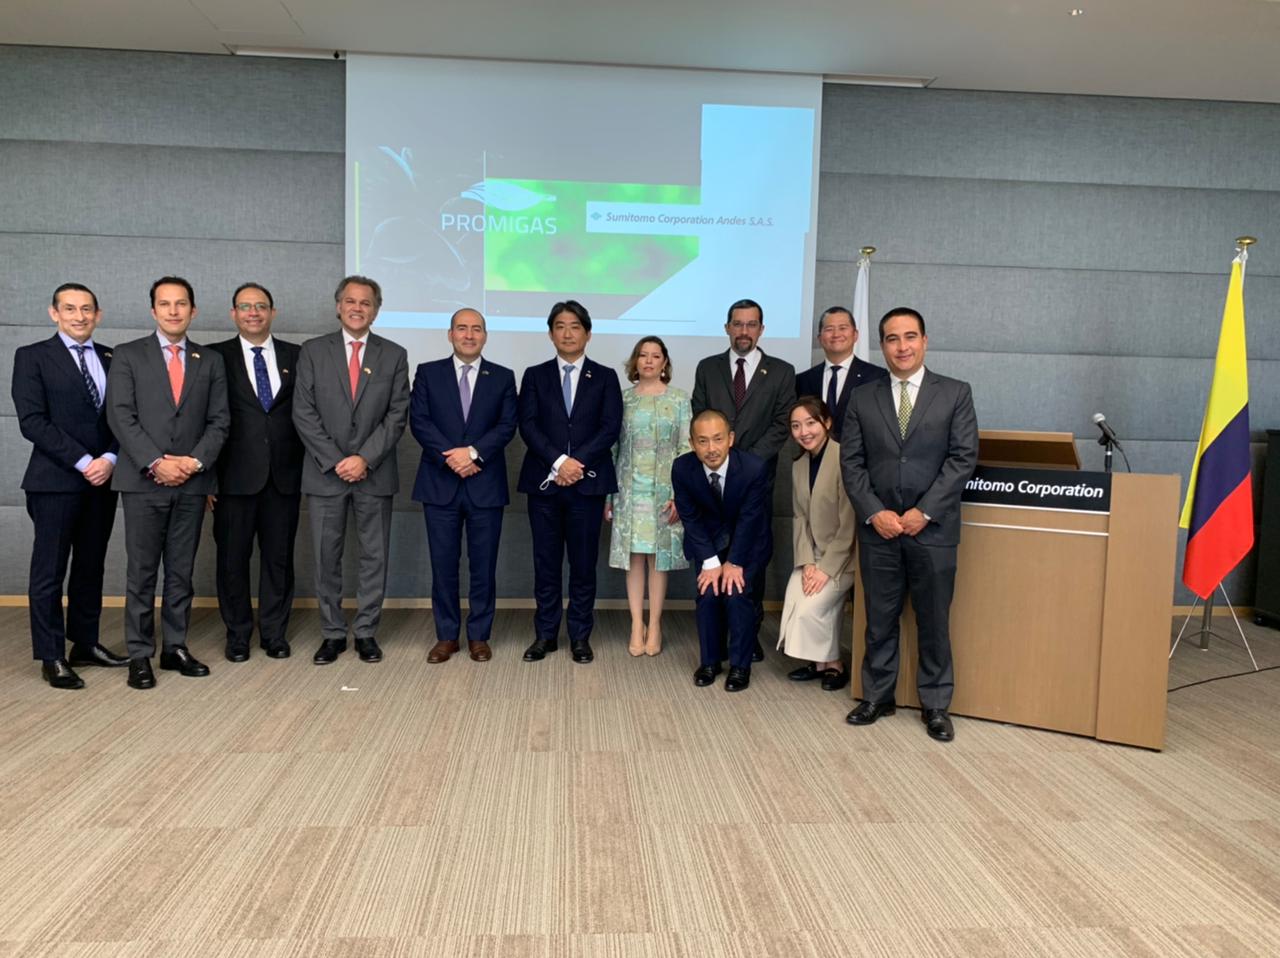 Promigas y Sumitomo Corporation Andes, empresas asociadas a Hidrógeno Colombia, firman acuerdo para promover el uso de hidrógeno en vehículos eléctricos